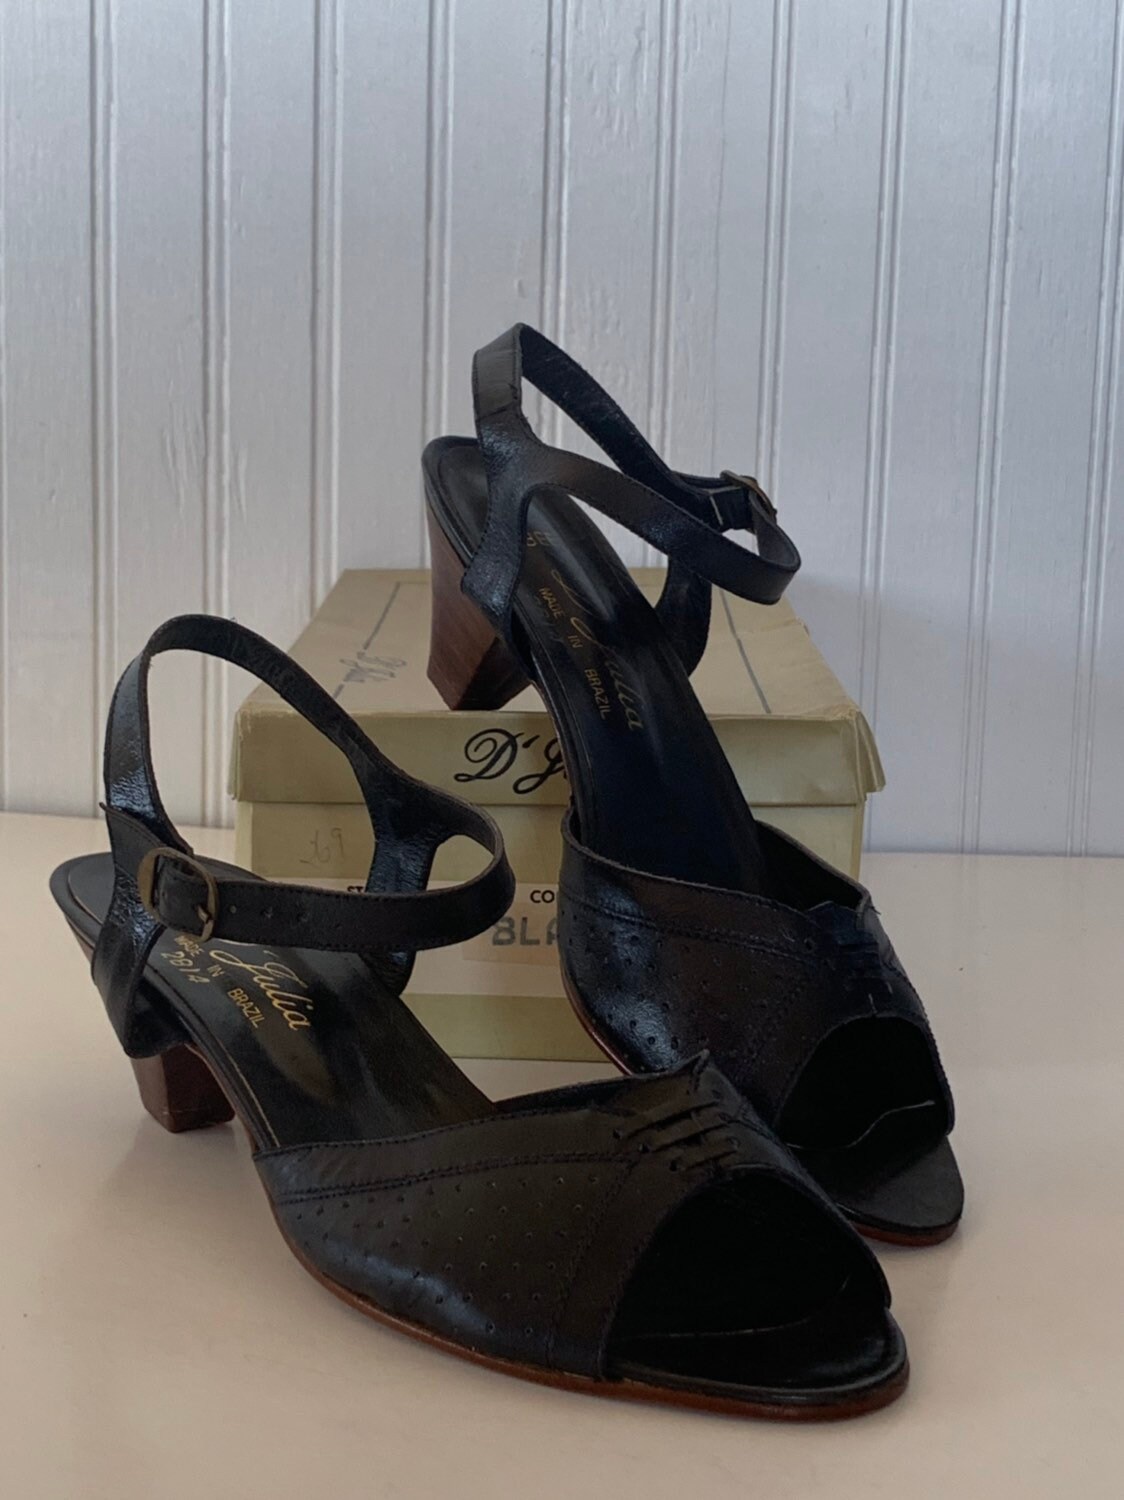 Wide Width Shoes for Women | Sam Edelman